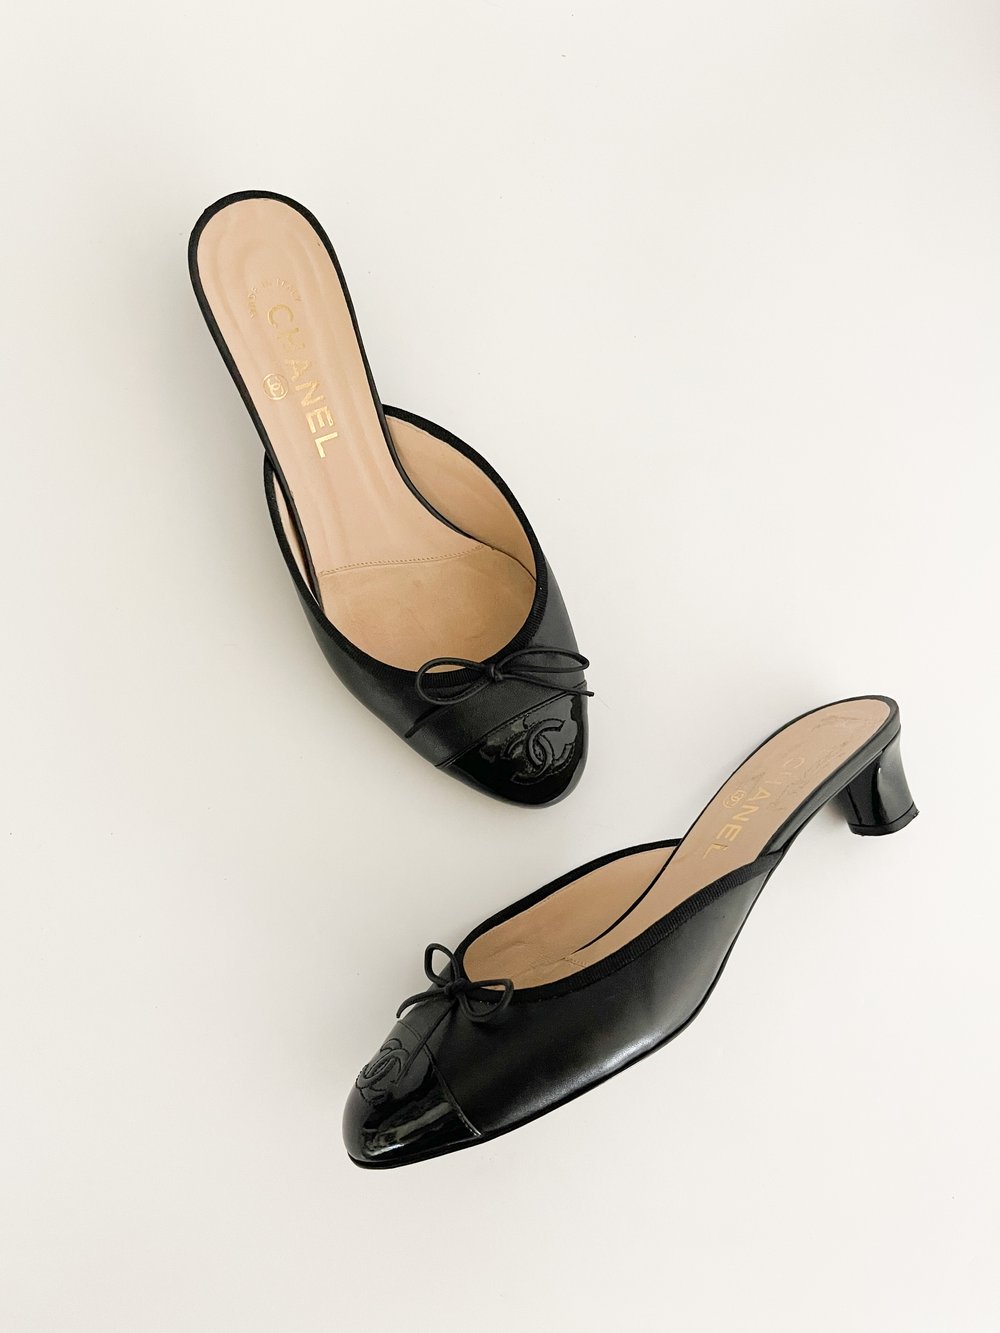 Chanel CC Tan & Black Mule Kitten Heels (US 7.5 / IT 37.5) — sororité.